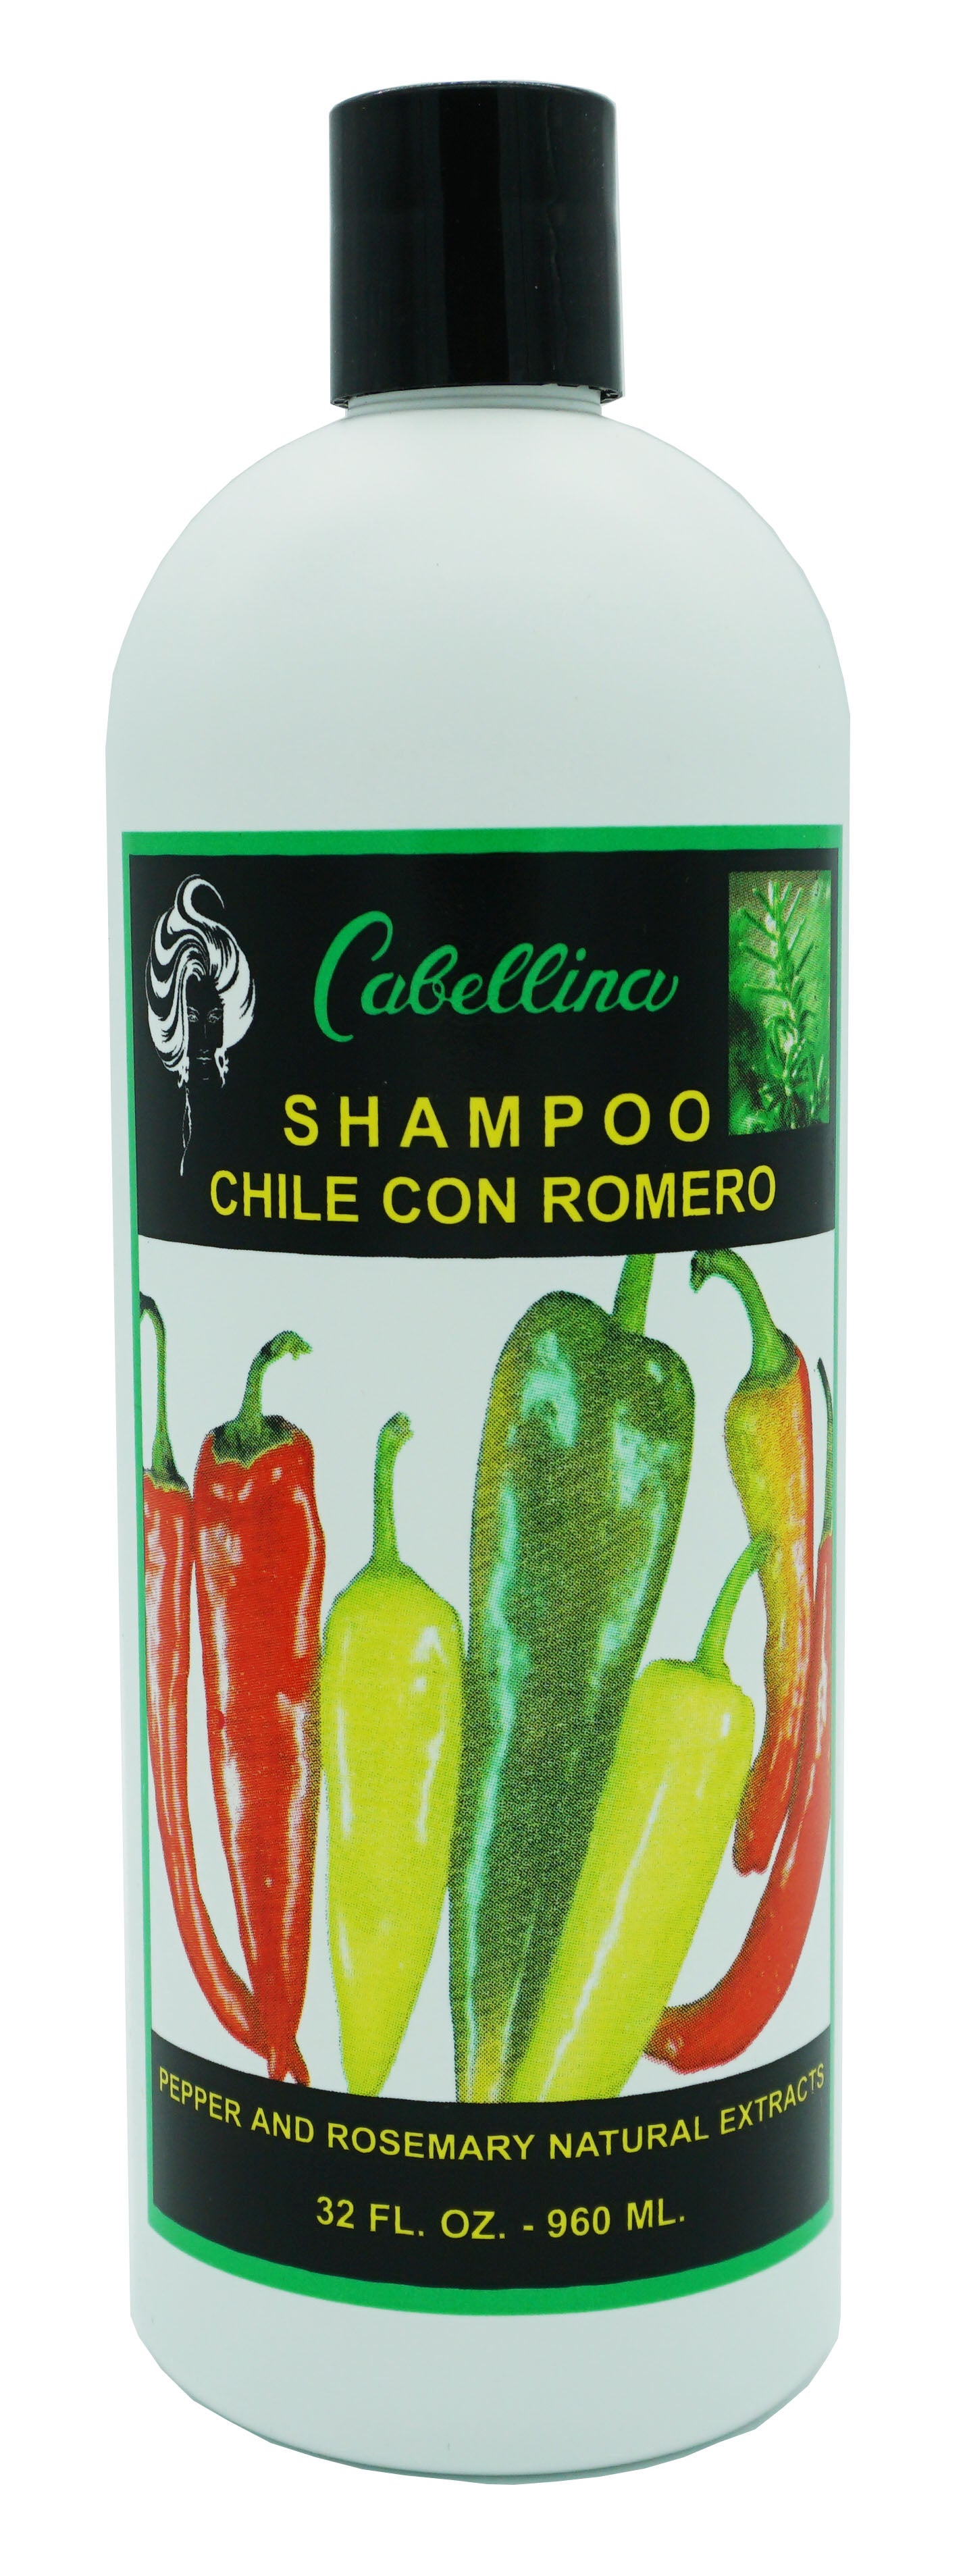 Cabellina Chile con Romero Shampoo